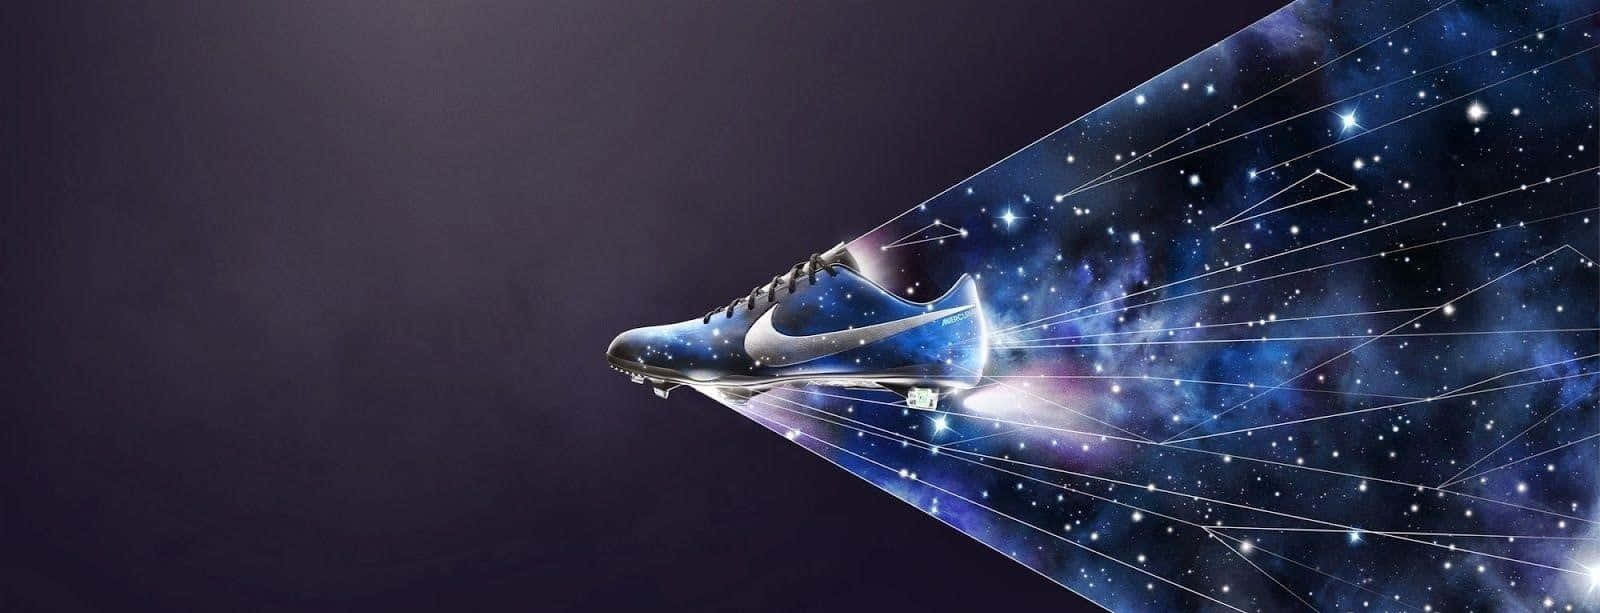 Mercurial Vapor Nike Galaxy Abstract Design Wallpaper